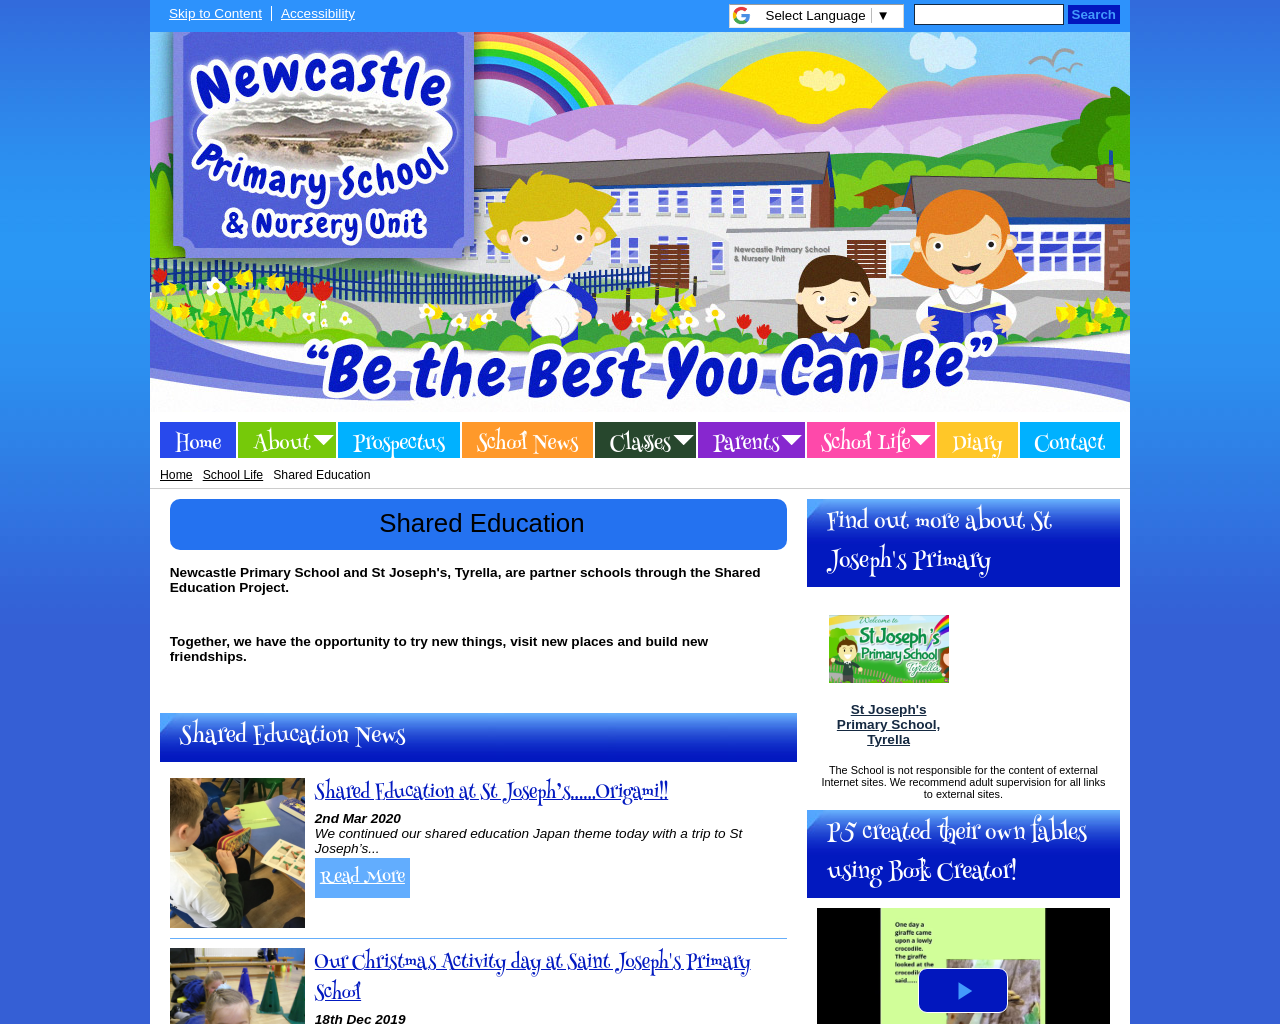 Newcastle Primary School